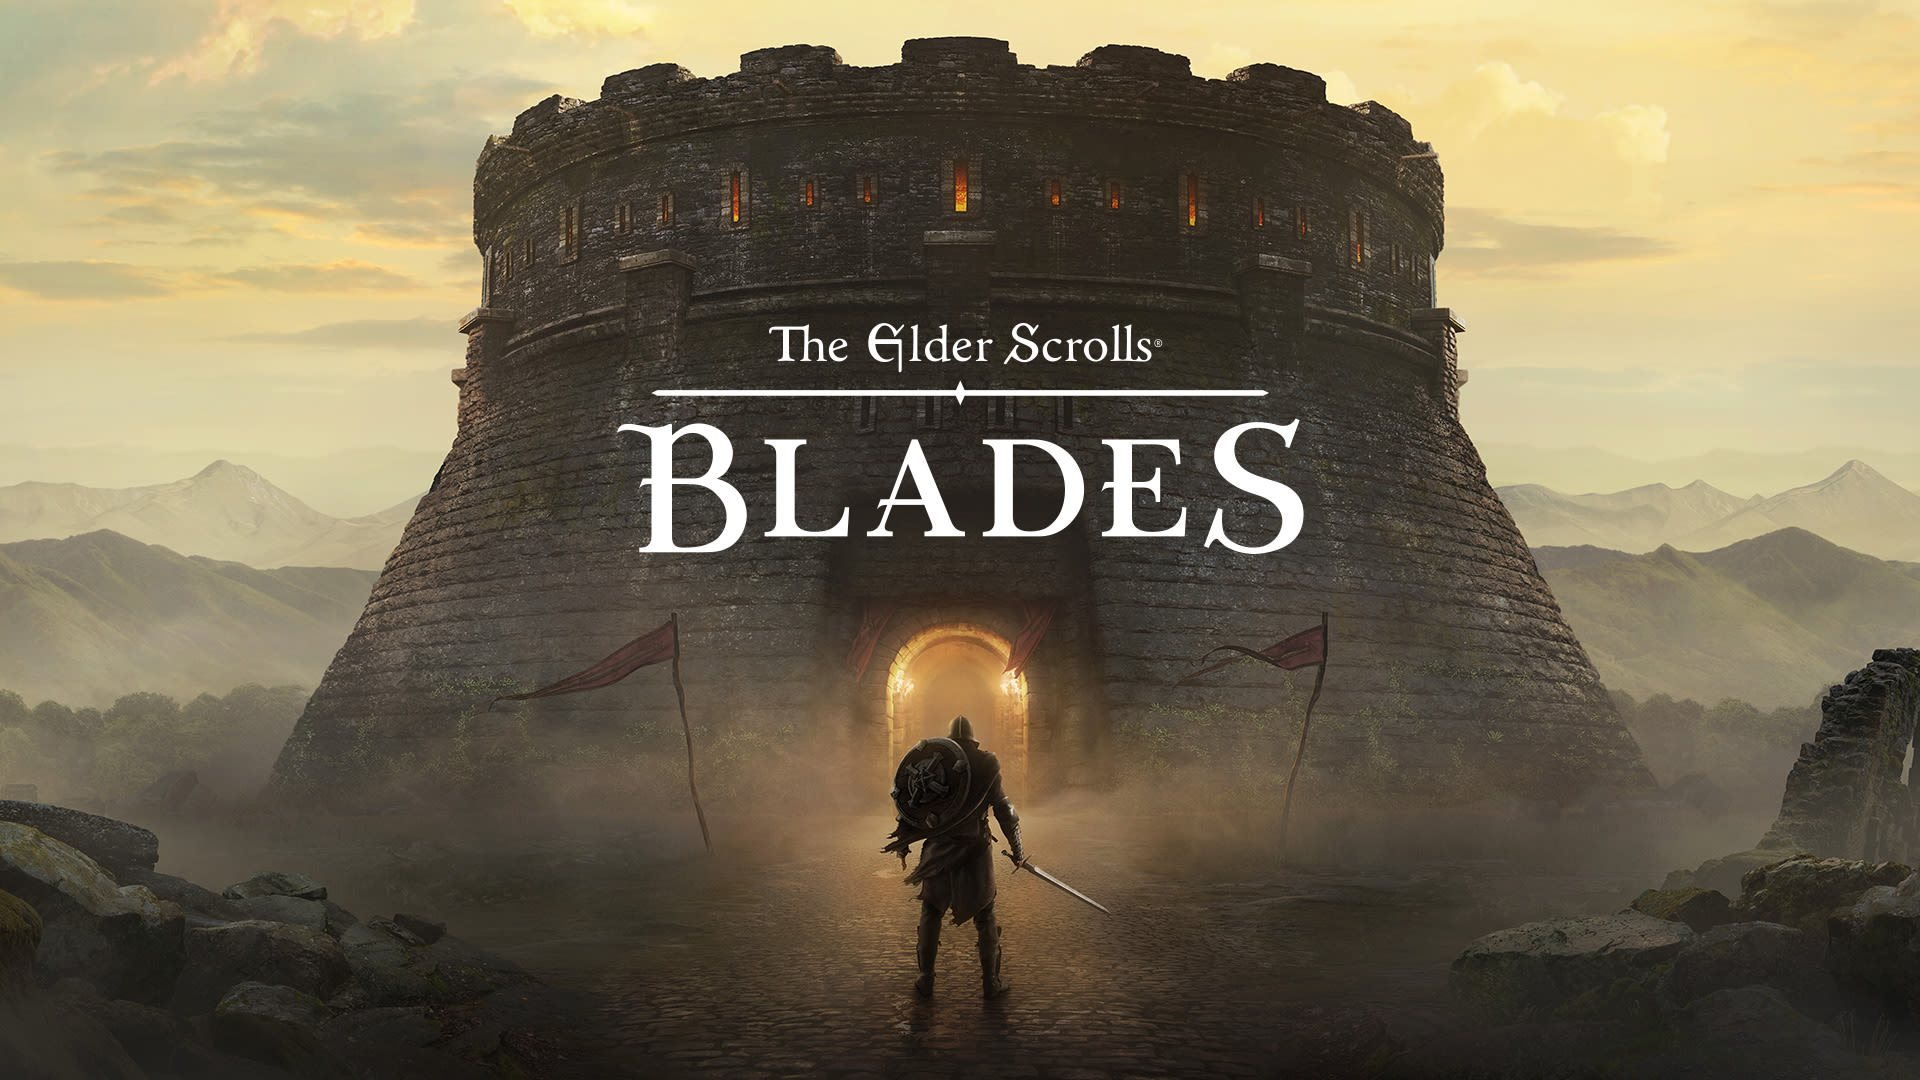 The Elder Scrolls®: Blades